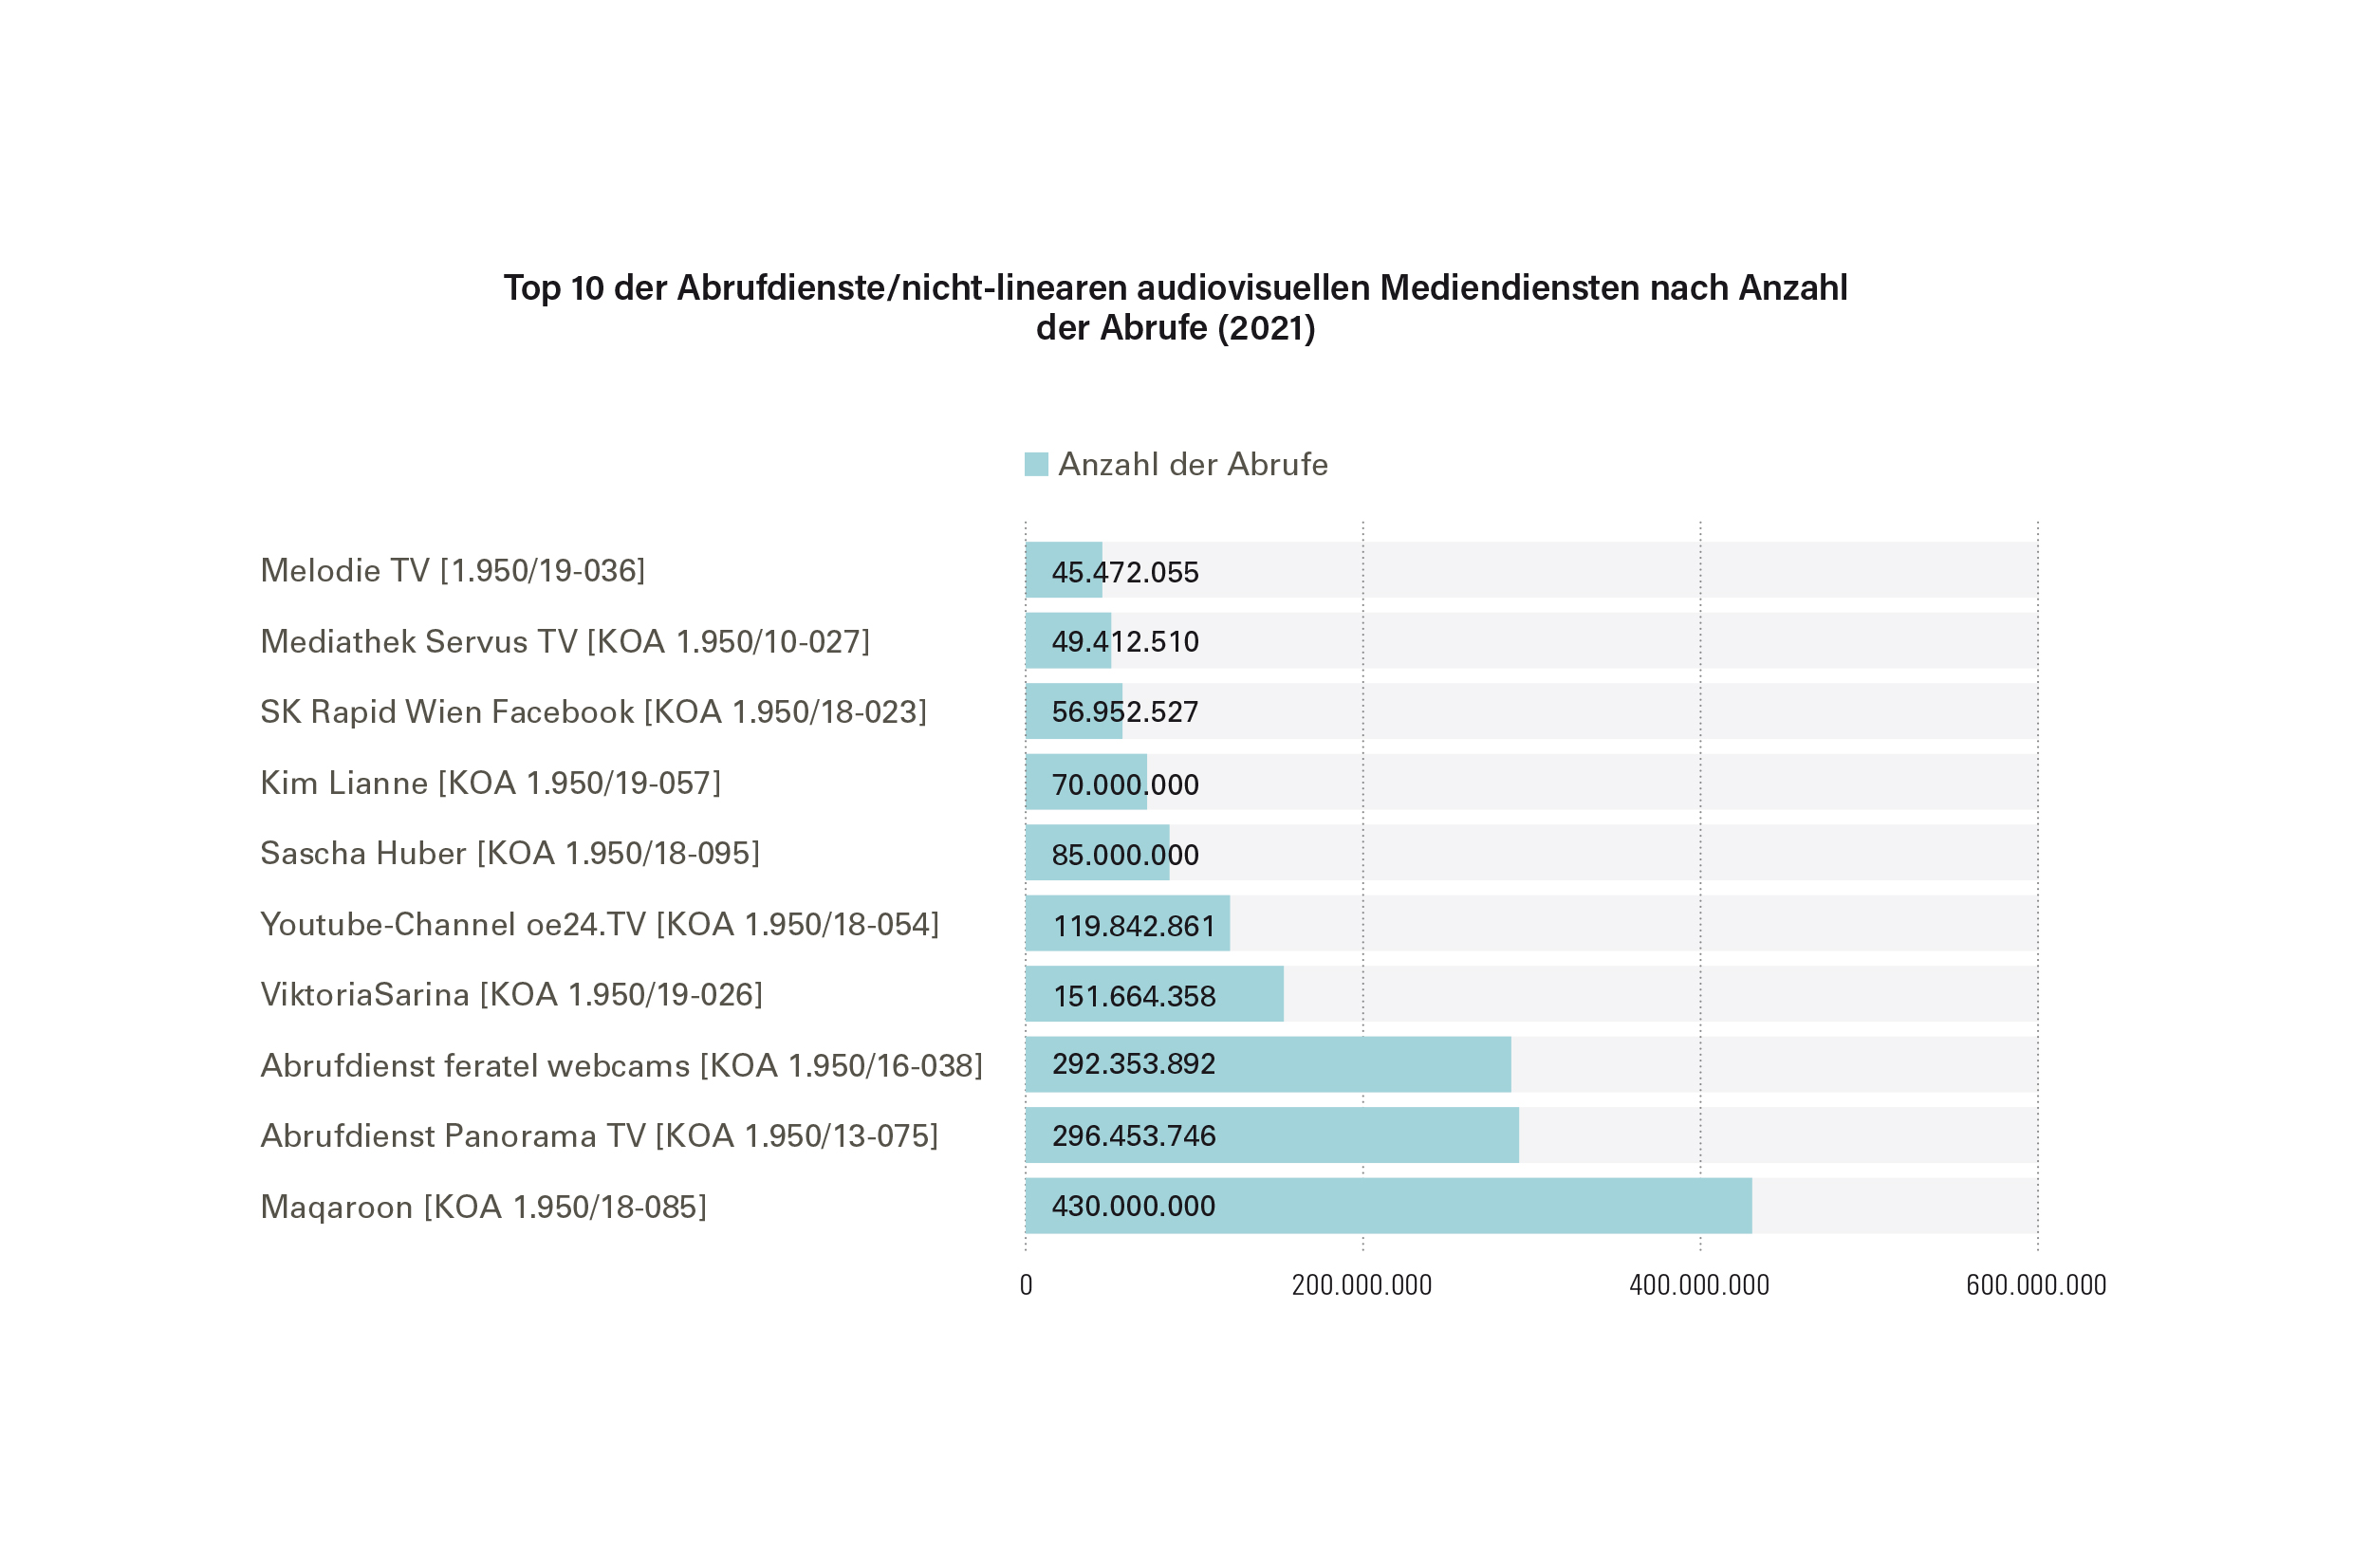 Top 10 der Abrufdienste/nicht-linearen audiovisuellen Mediendiensten nach Anzahl der Abrufe (2021)